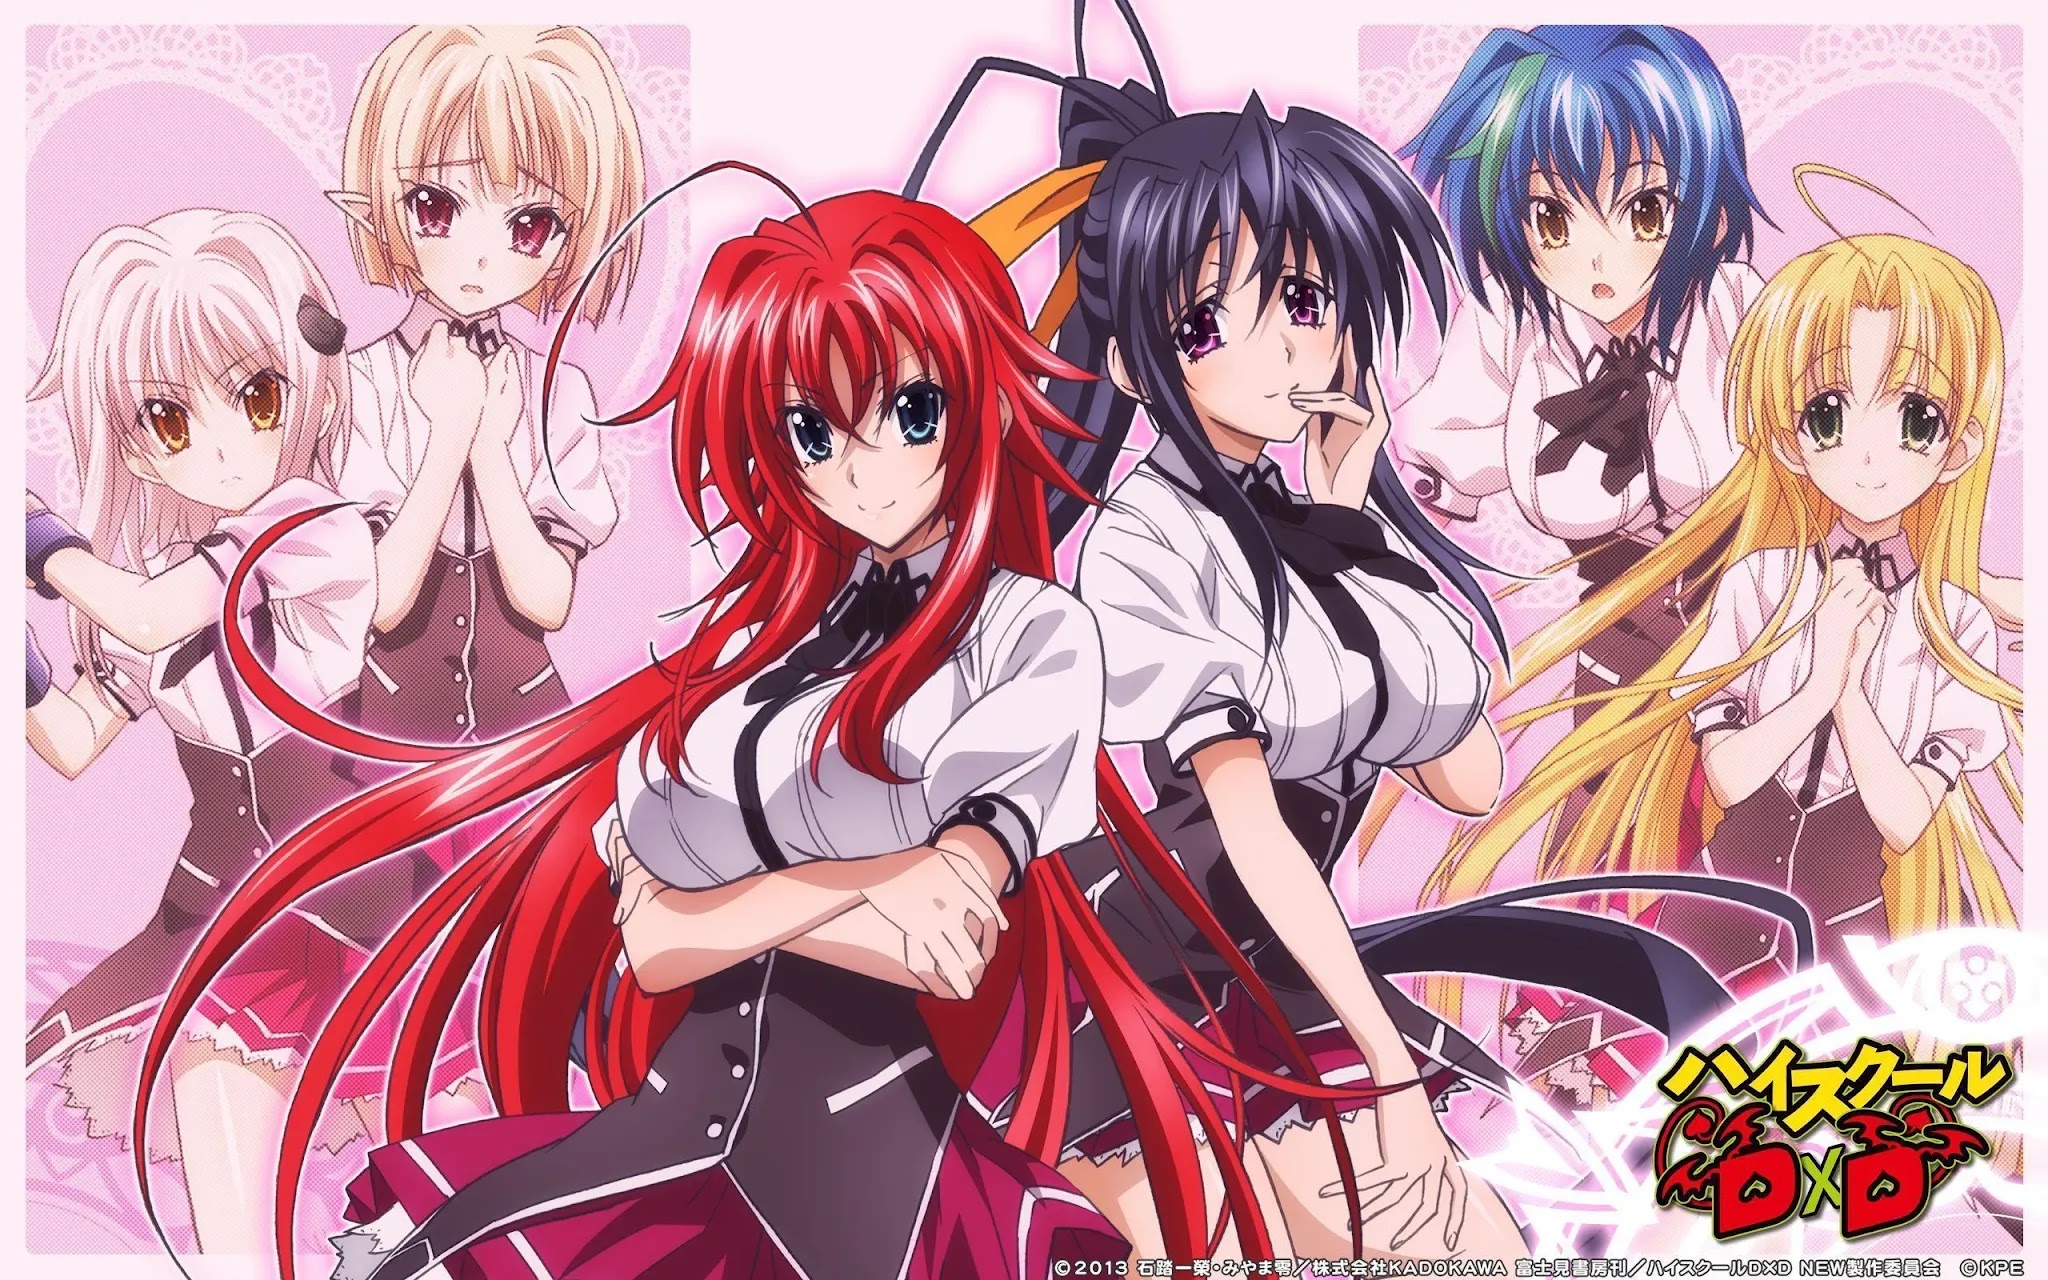 High School DxD: Anime está cada vez mais perto de um retorno